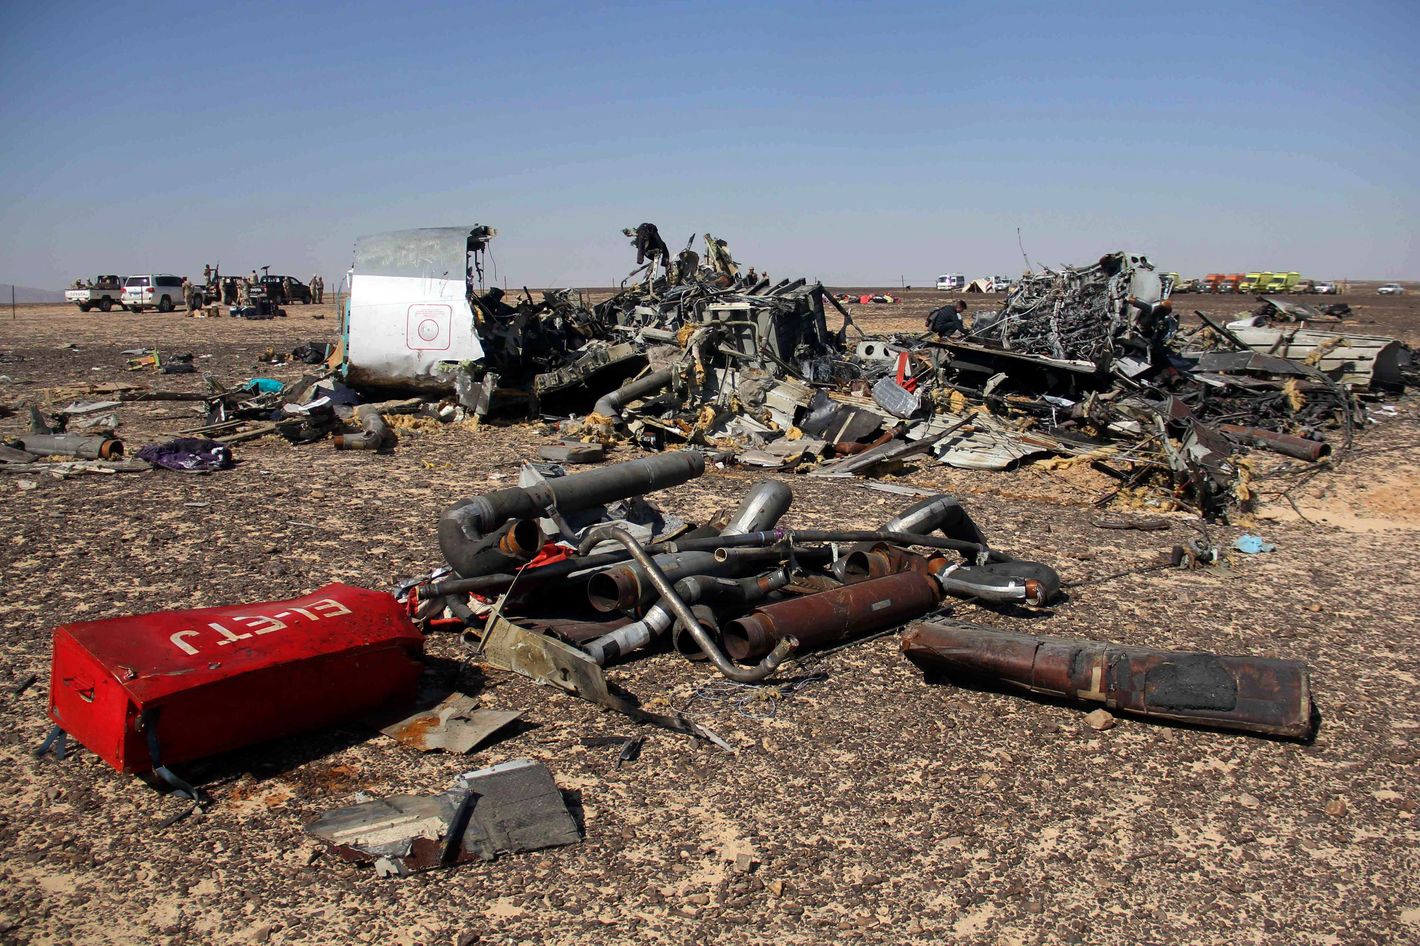 фото погибших при крушении самолета в египте